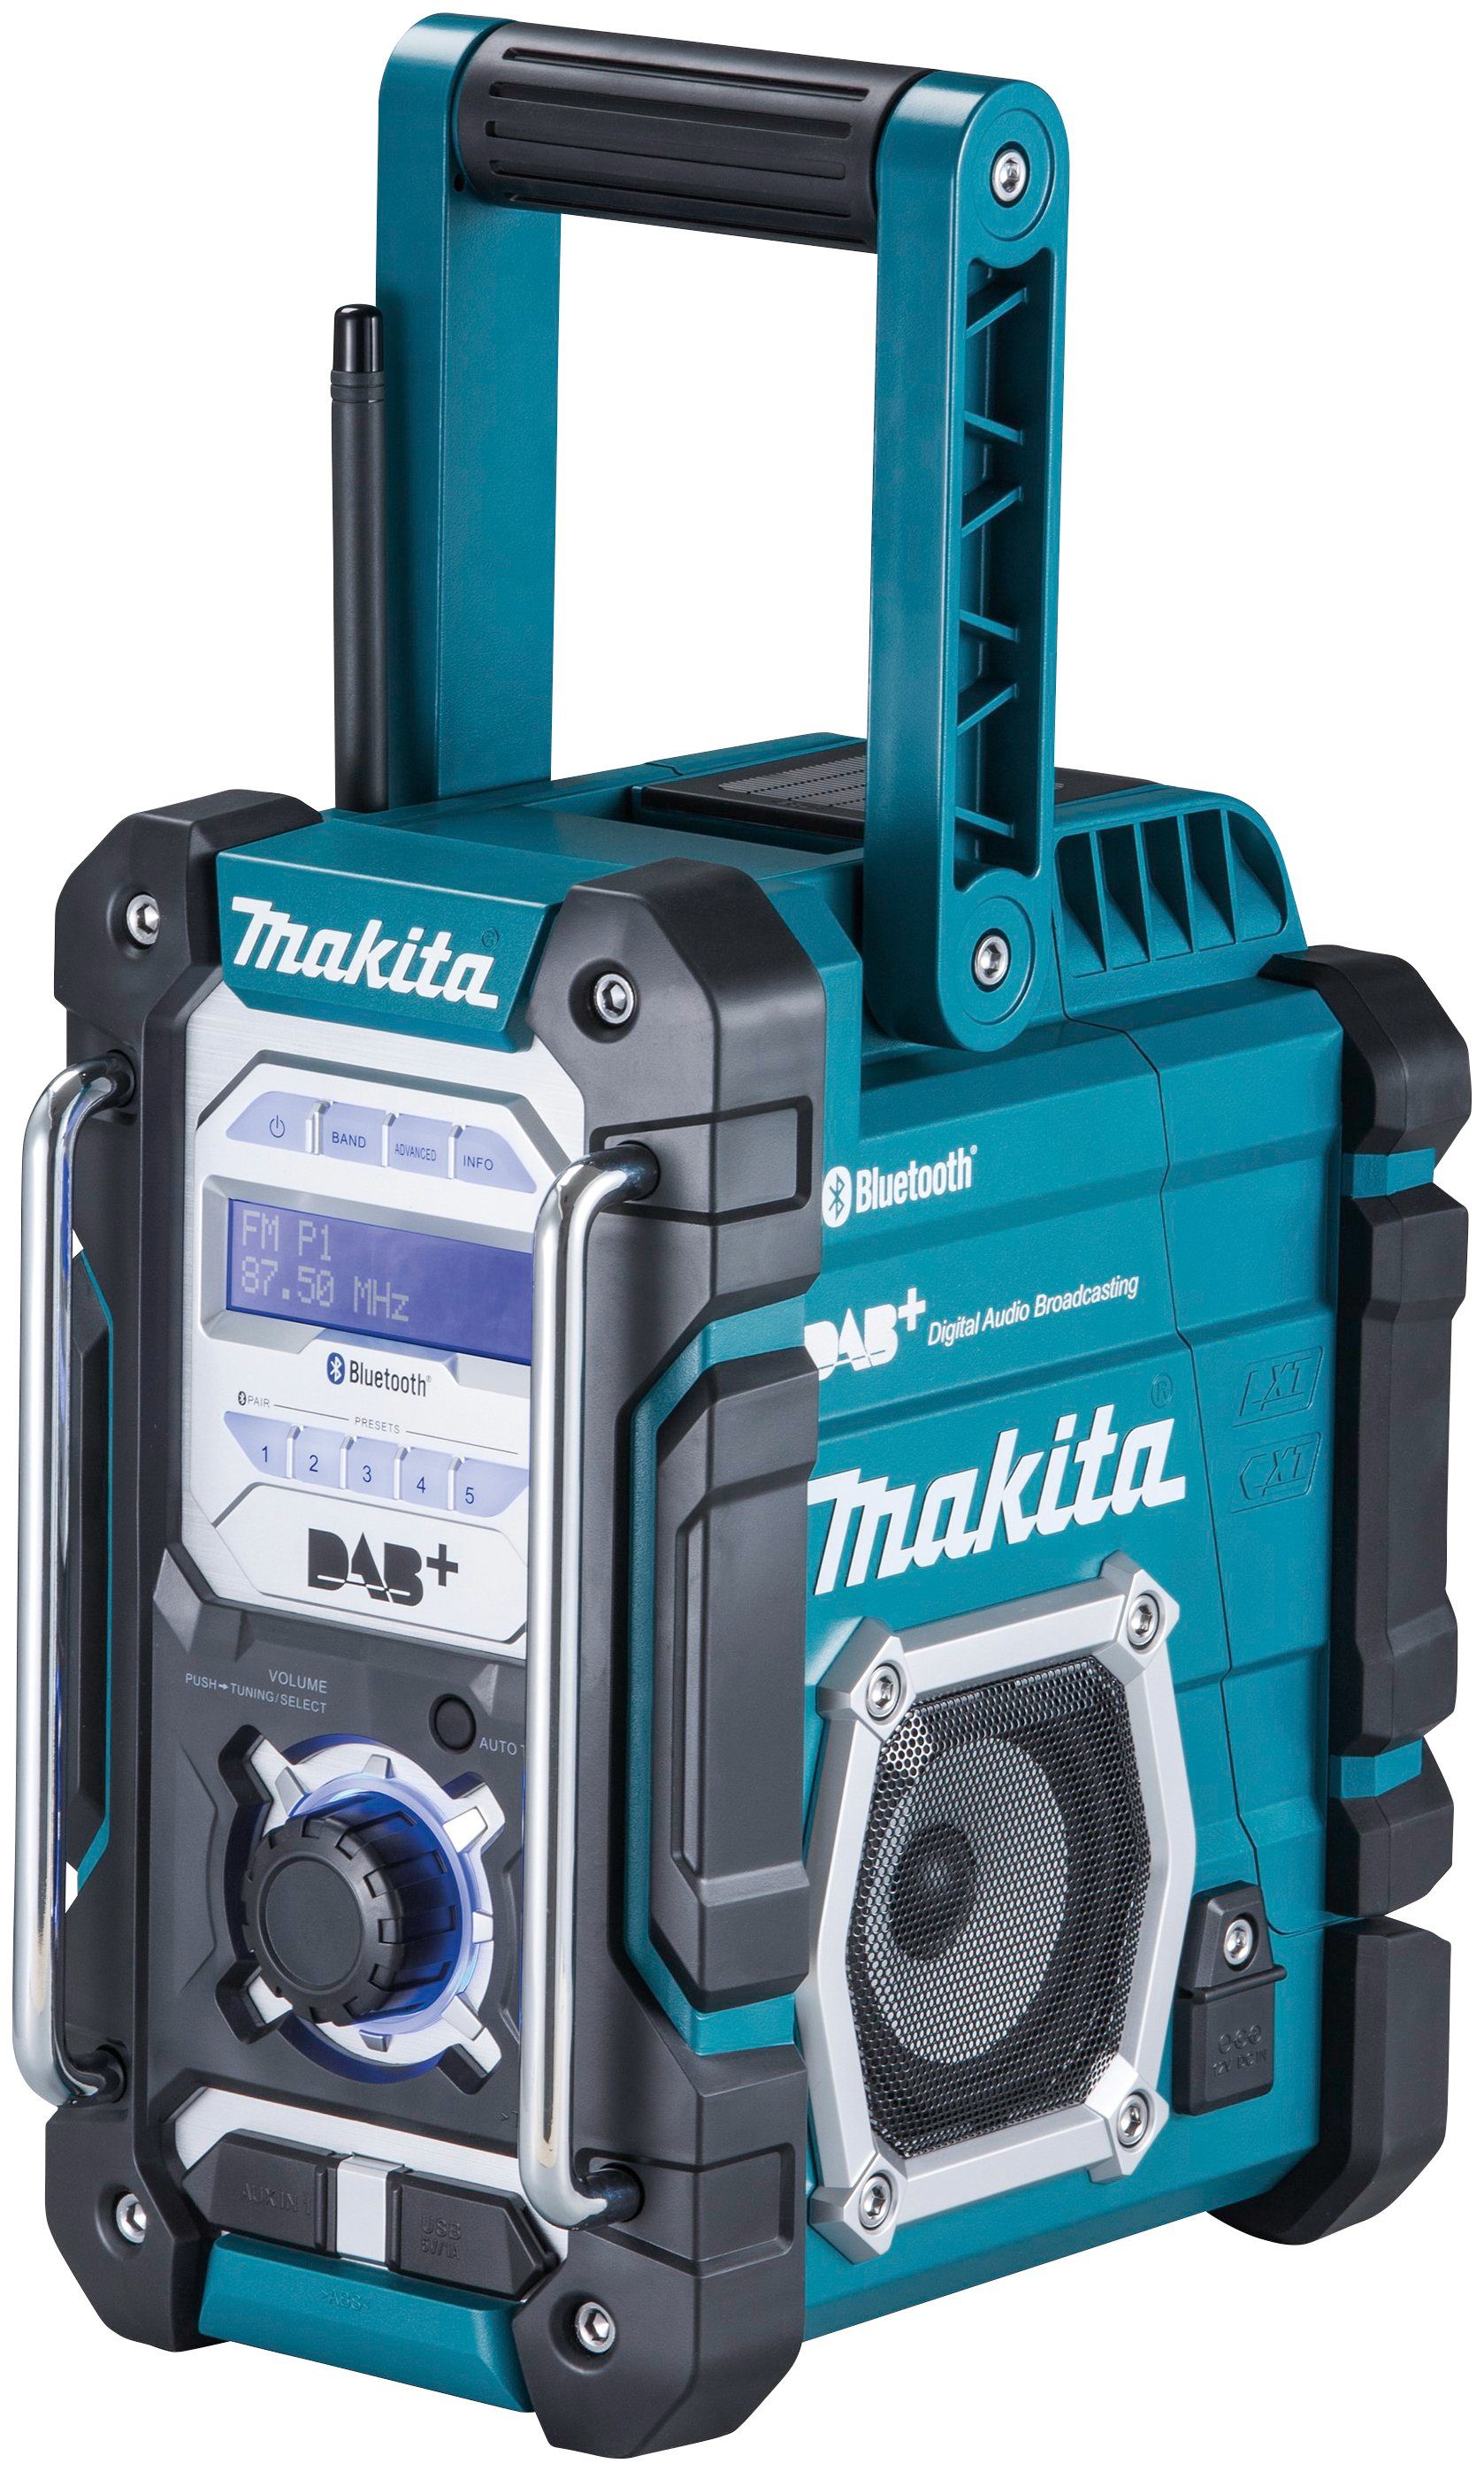 (Digitalradio (DAB), Baustellenradio Akku) ohne Makita FM-Tuner, DMR112